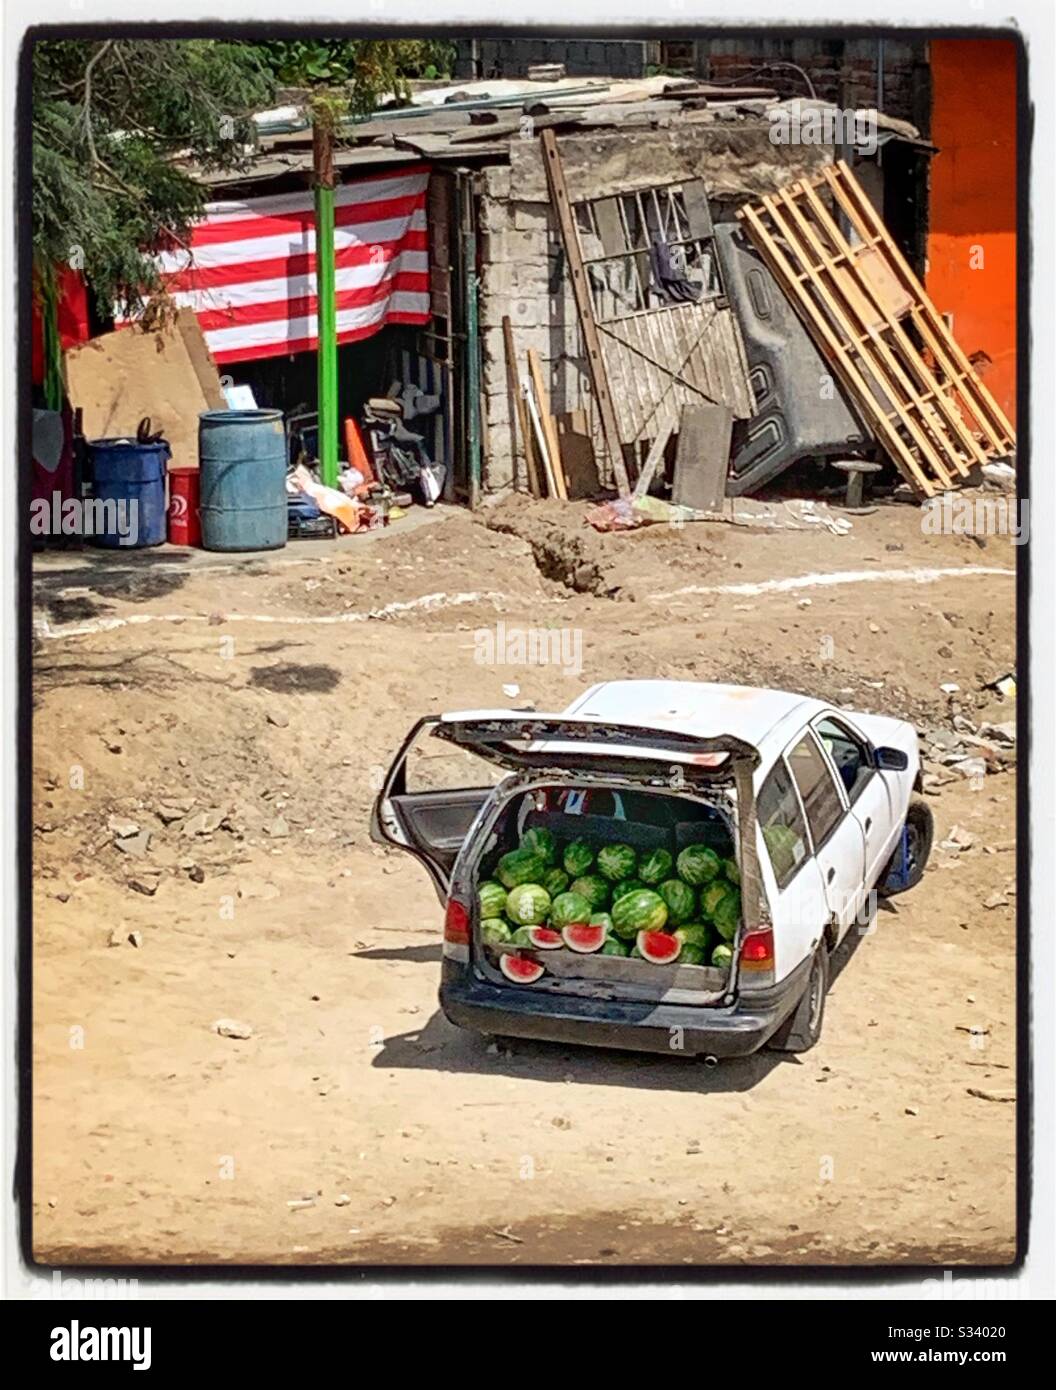 Die Rückseite eines Fahrzeugs ist mit süßen, saftigen Wassermelonen gefüllt, die in einem farbenfrohen Display in einem ländlichen Gebiet von Mexiko zum Verkauf angeboten werden. Stockfoto